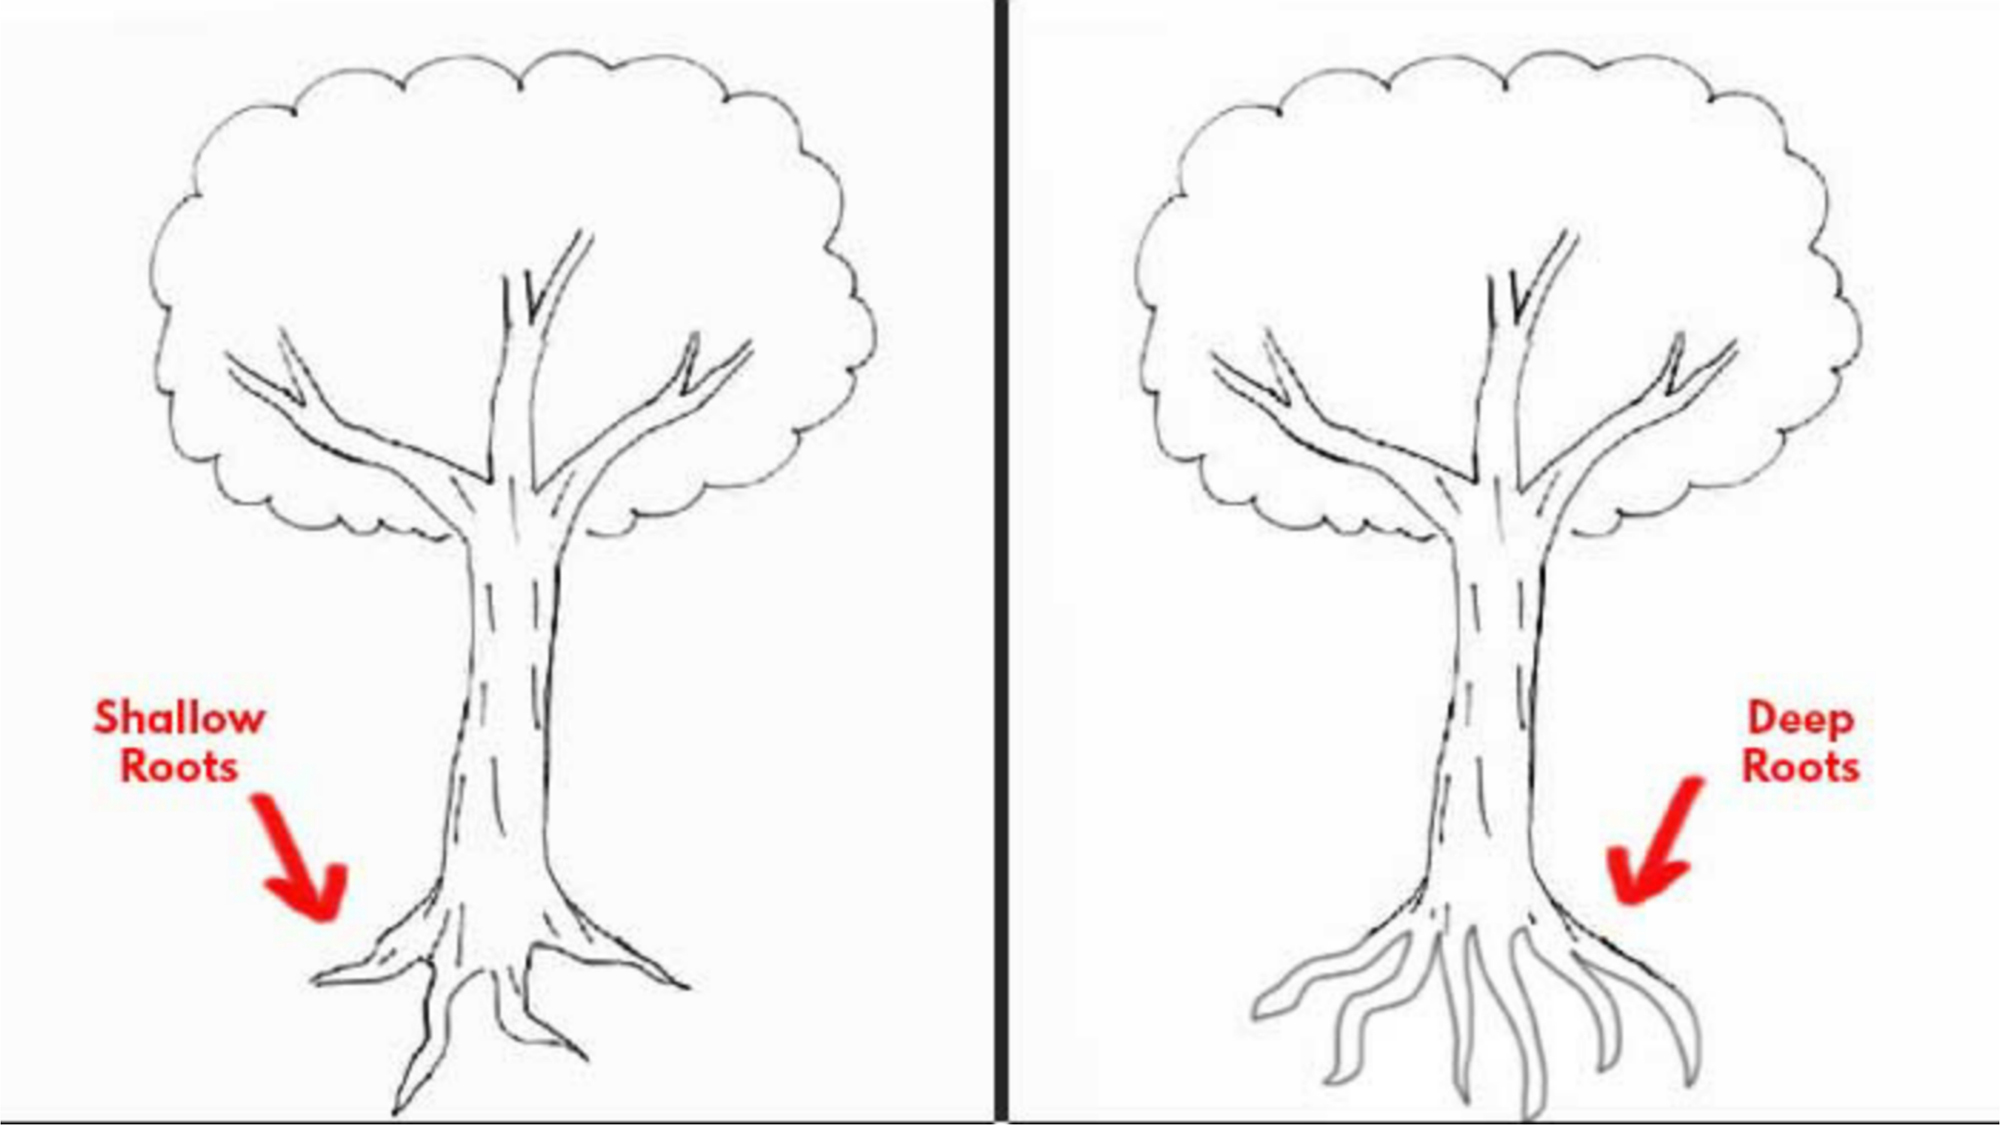 Nếu bạn đang tìm kiếm cách vẽ cây đơn giản nhất, thì bức tranh này sẽ là lựa chọn hoàn hảo cho bạn. Hãy dễ dàng vẽ một chiếc cây đầy màu sắc và phong cách với bức tranh này.